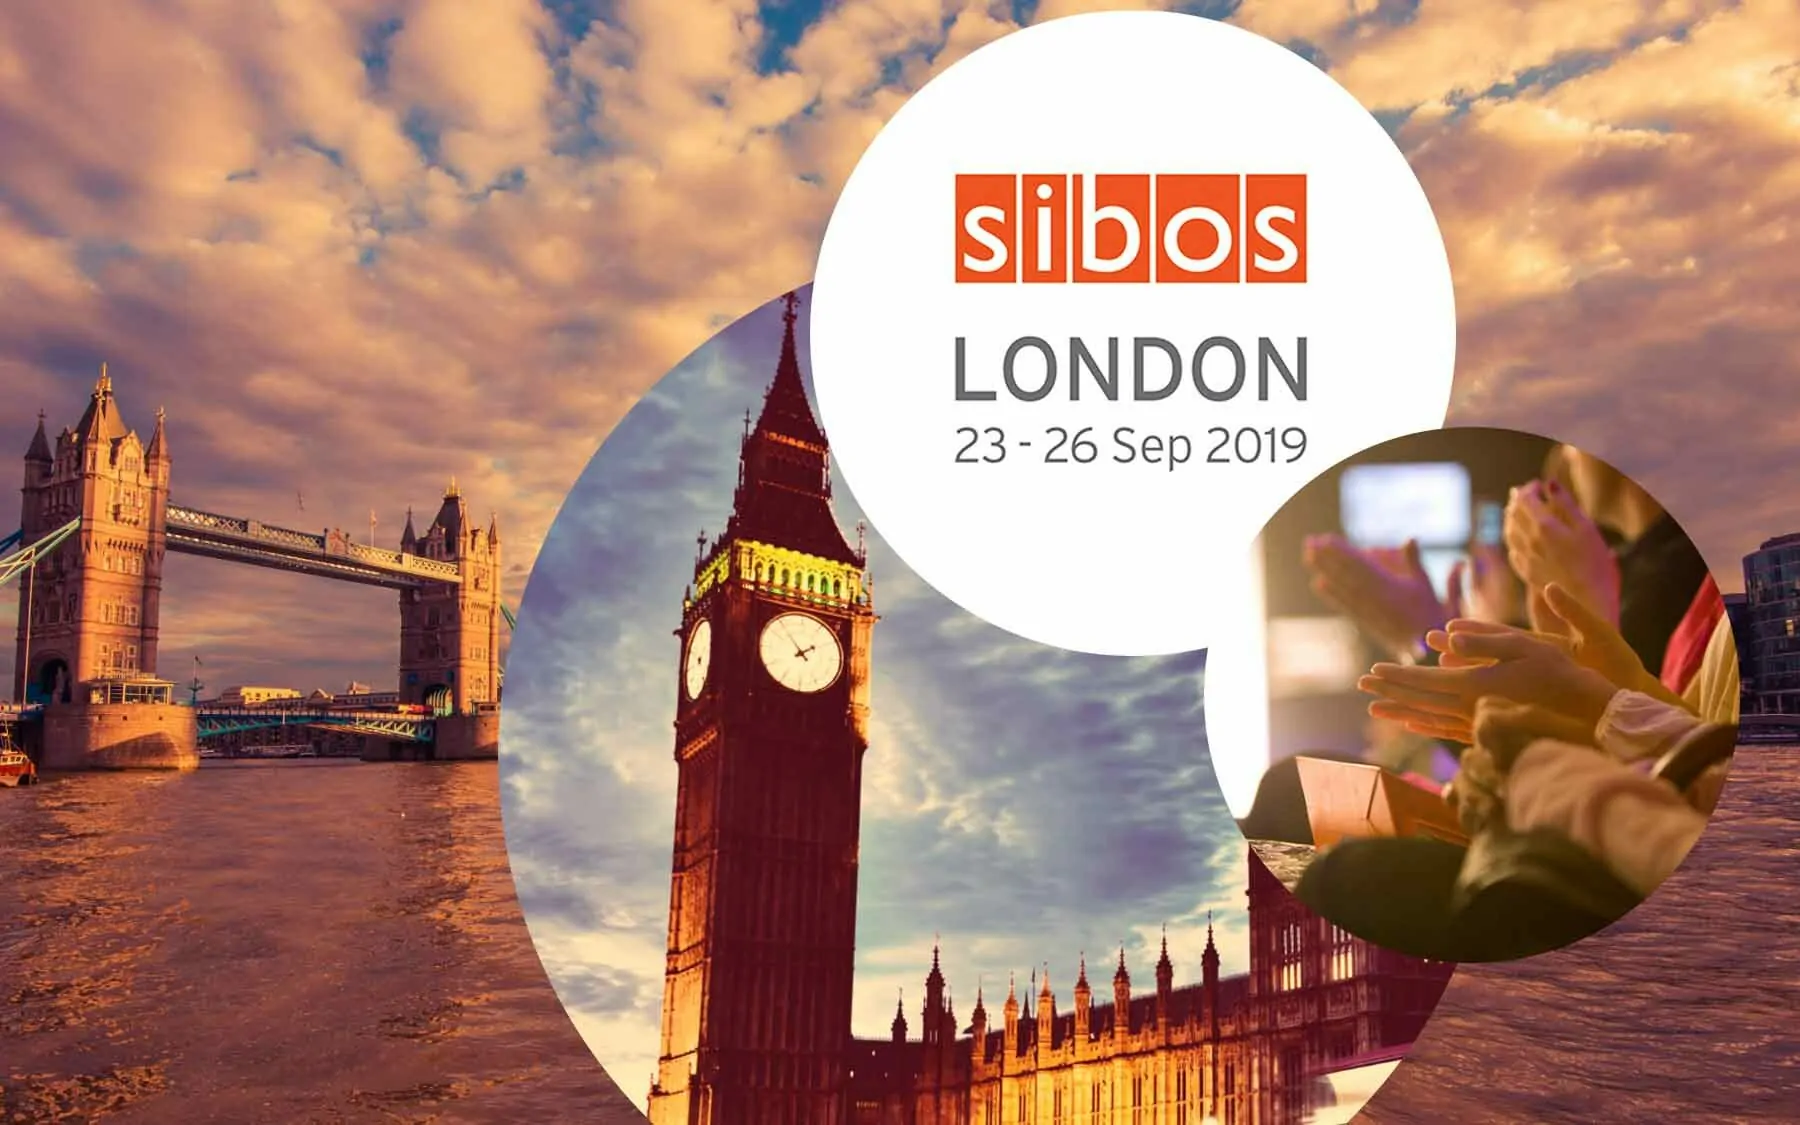 Logo von SIBOS, daneben ein Bild von applaudierenden Menschen und dahinter Stadtansichten von London, valantic at SIBOS in London